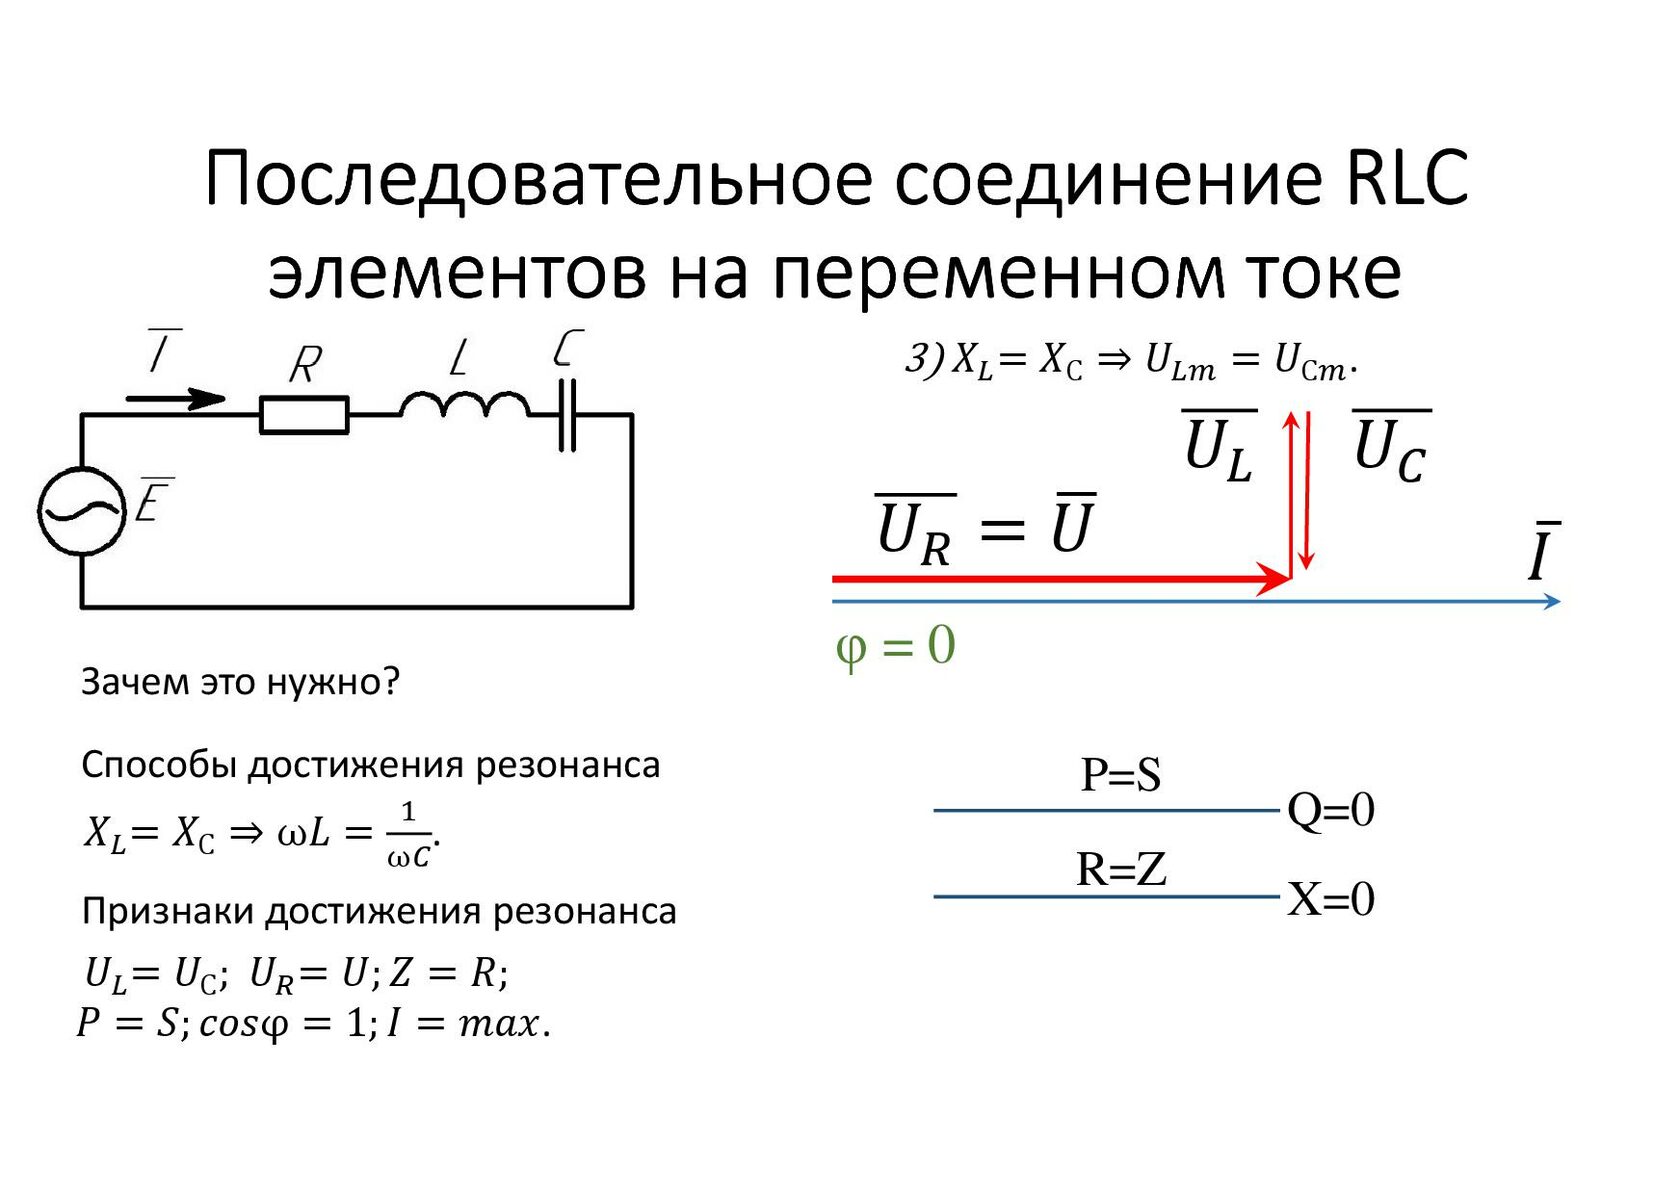 Последовательное соединение c. RLC цепи переменного тока. Электрические цепи с параллельным соединением RLC. Последовательное подключение в переменном токе. Электрическая цепь с параллельным соединением RLC-элементов.